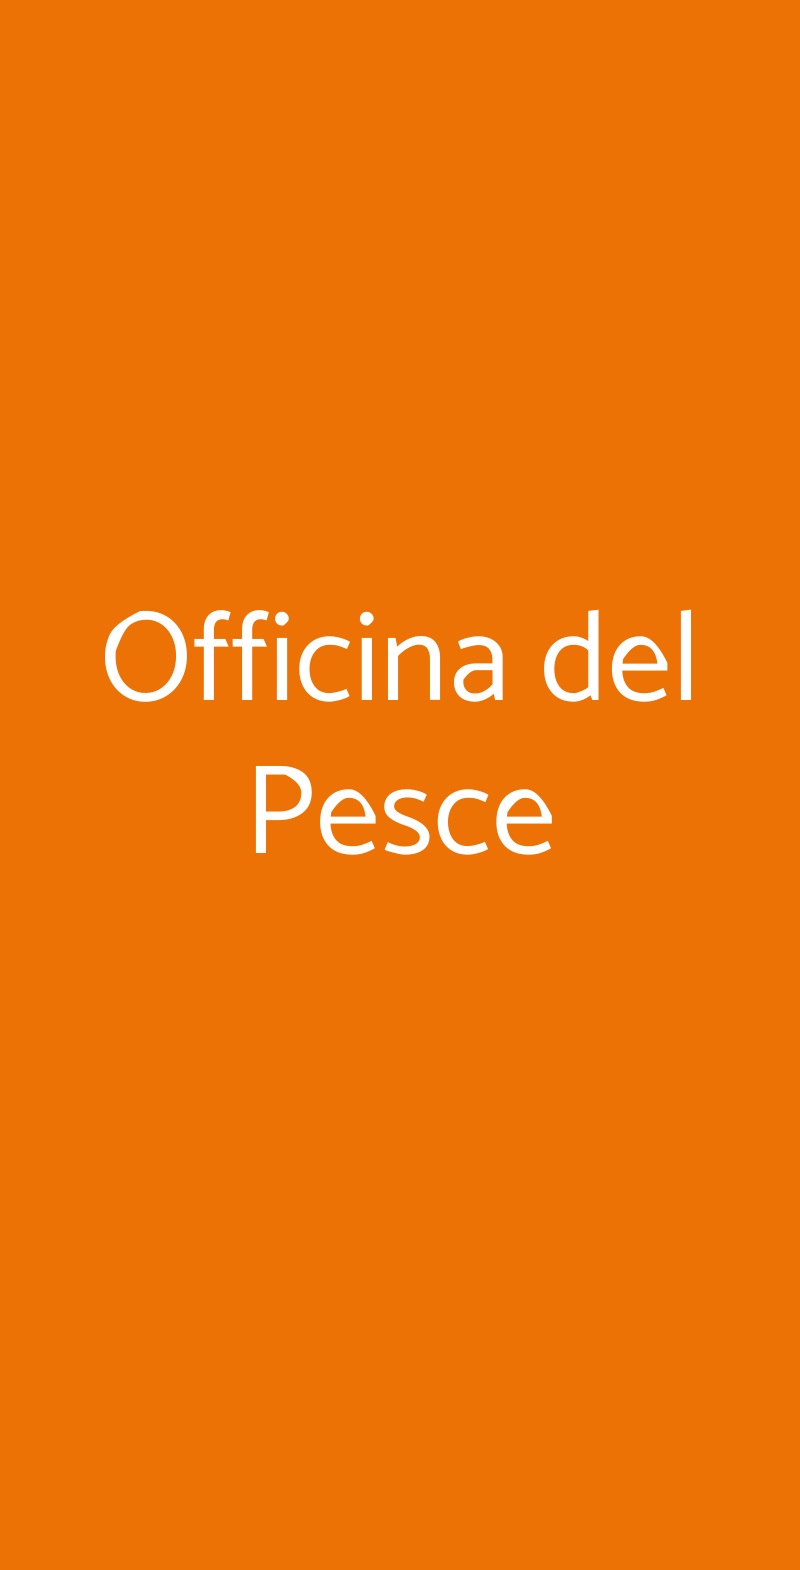 Officina del Pesce Milano menù 1 pagina